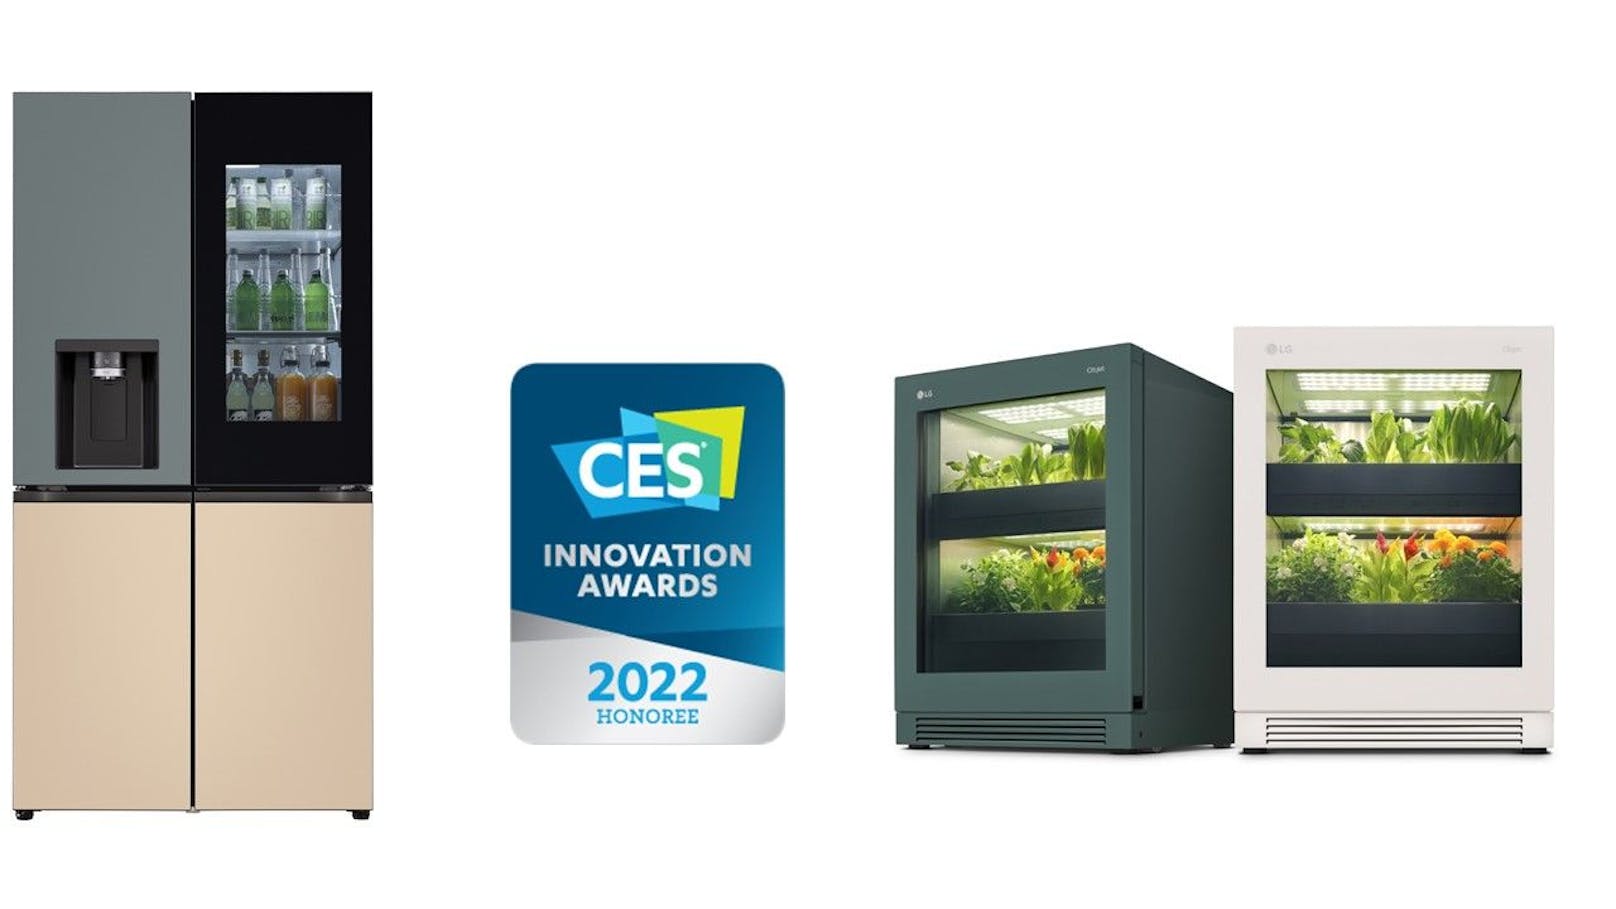 Zahlreiche Produkte von LG wurden für ihren Beitrag zur Innovation ausgezeichnet, darunter OLED-Fernseher, Haushaltsgeräte und B2B-Produkte.